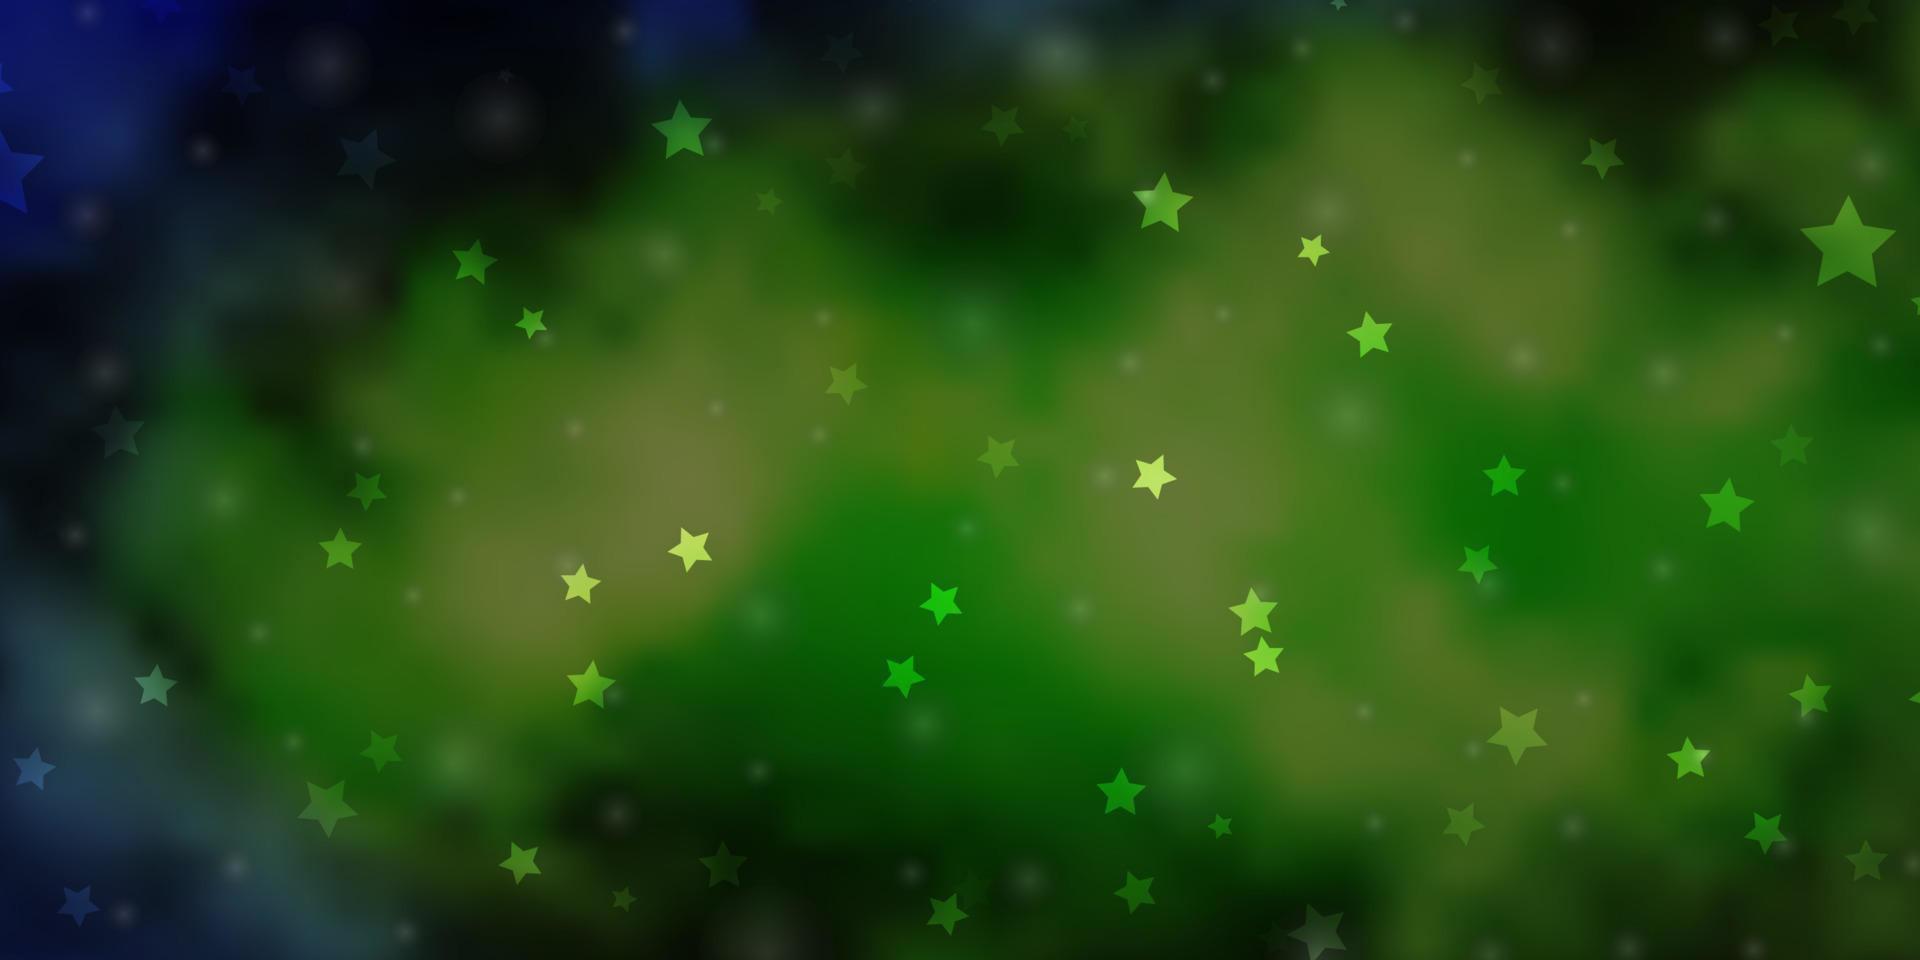 modelo de vetor azul claro e verde com estrelas de néon.